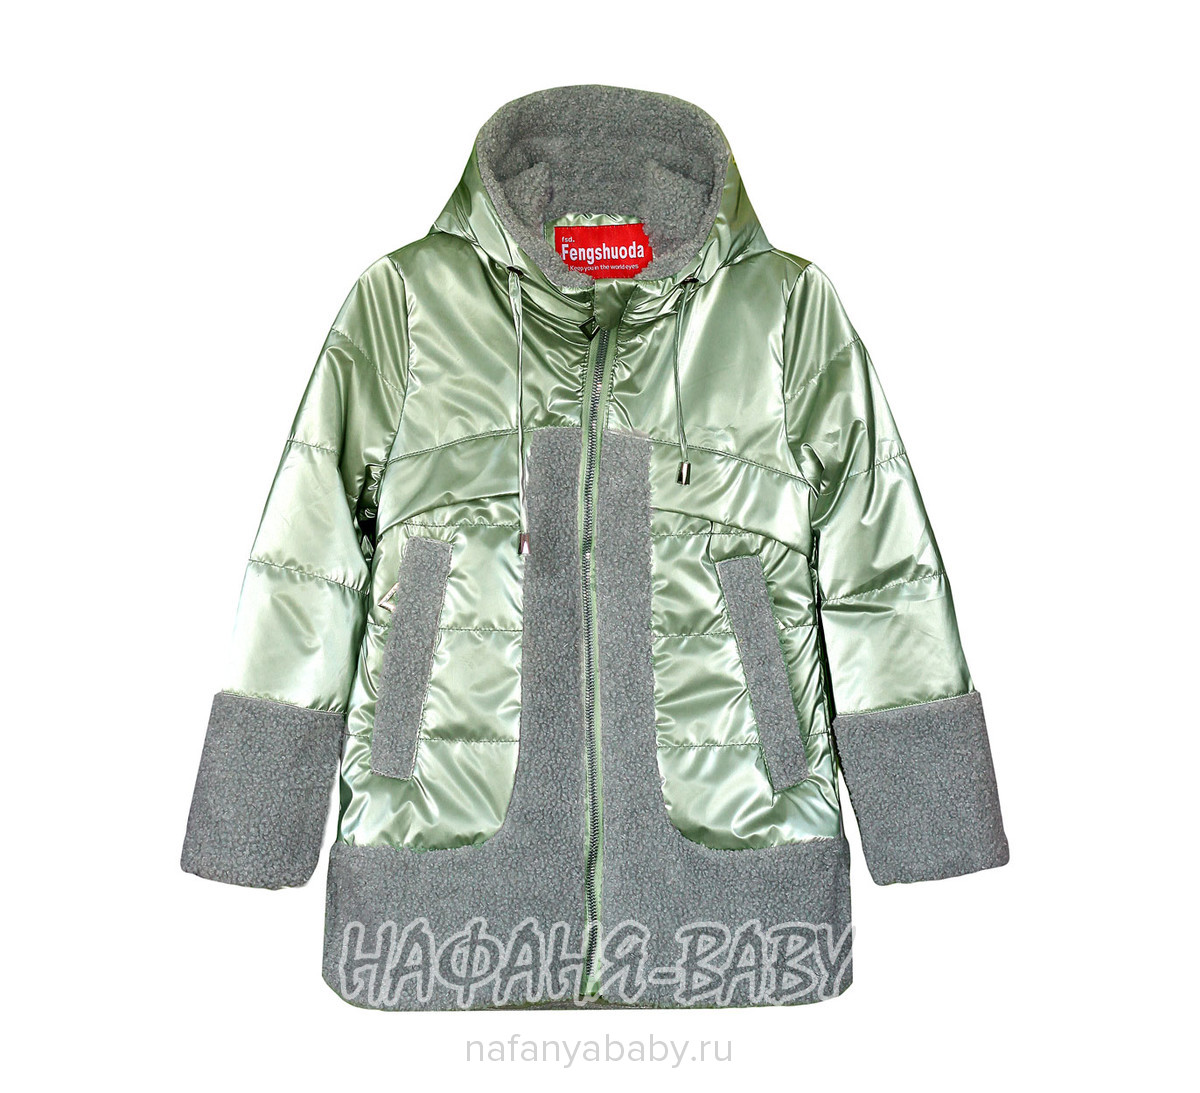 Детская демисезонная куртка FSD арт: 1018-1, 1-4 года, 5-9 лет, оптом Китай (Пекин)